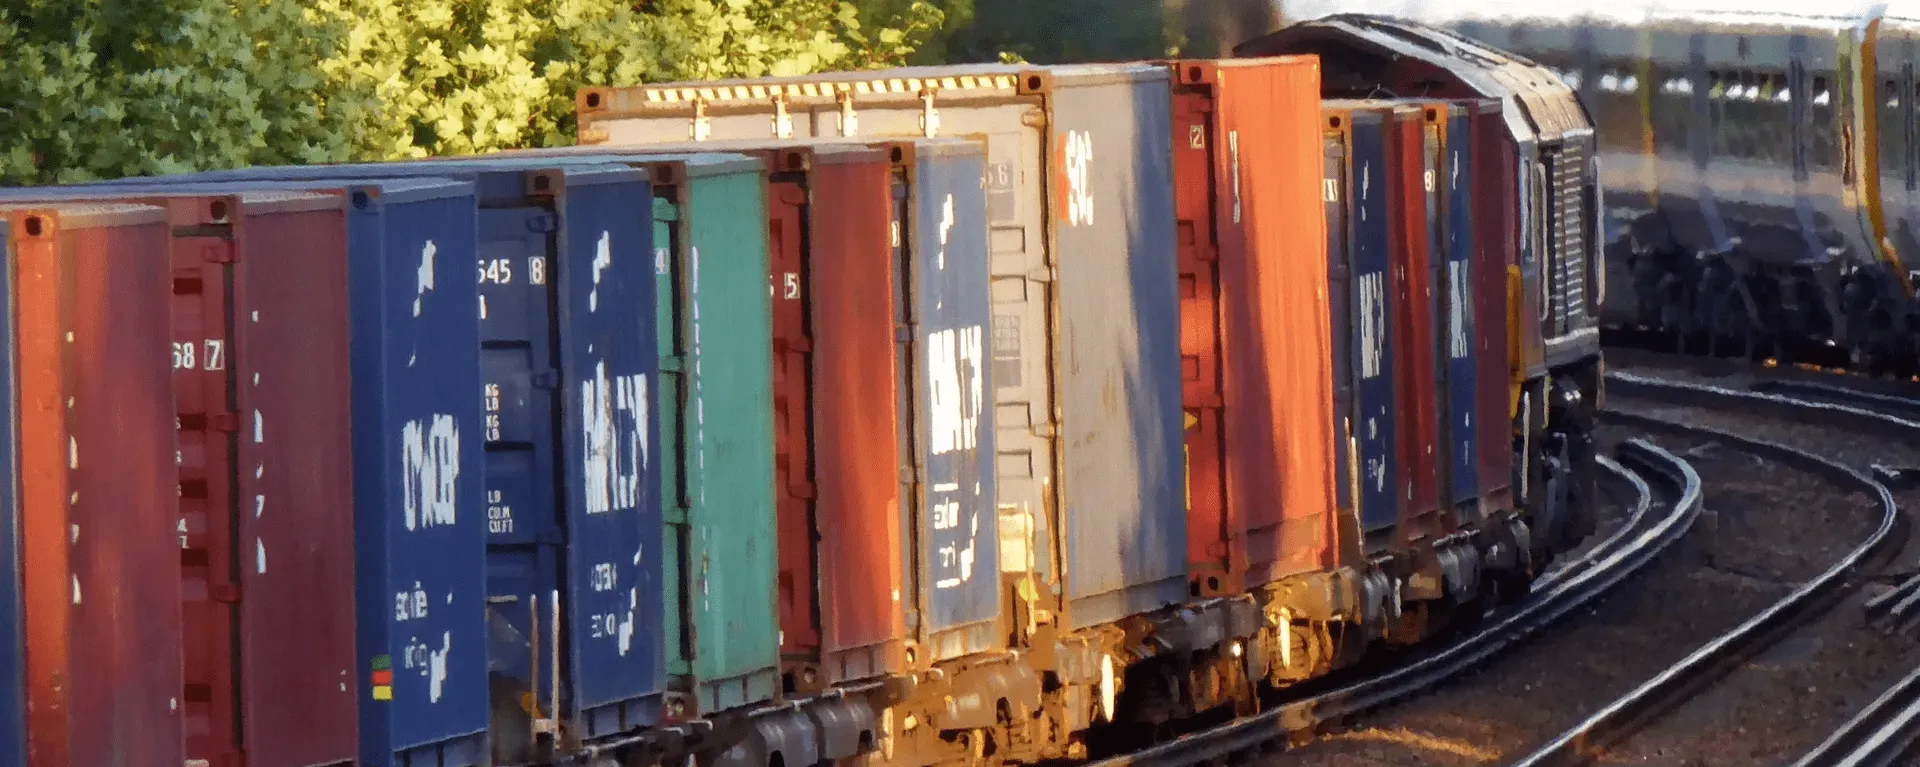 俄罗斯铁路公司表示南北运输走廊西线集装箱运输激增5倍